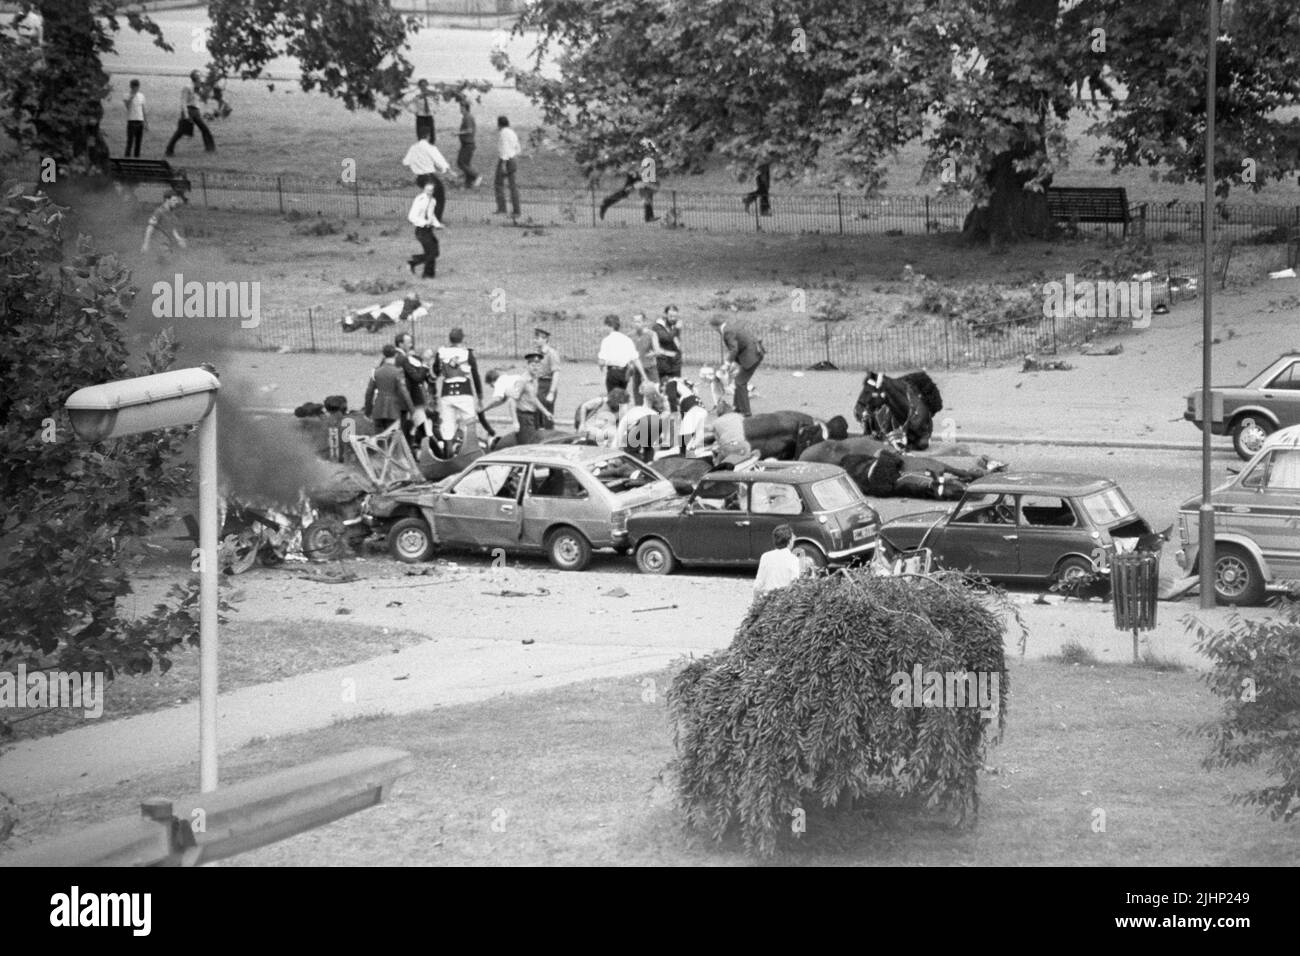 Foto de archivo fechada el 20/7/1982 de la escena en Rotten Row, Londres, después de que un coche bomba explotara cerca de Hyde Park Barracks. Las familias de los soldados muertos en los atentados con bombas del IRA en Hyde Park y Regent's Park han dicho que su sufrimiento sigue sin disminuir 40 años después. En total, 11 militares murieron en los dos ataques que tuvieron lugar a pocas horas en Londres el 20 1982 de julio. Fecha de emisión: Miércoles 20 de julio de 2022. Foto de stock